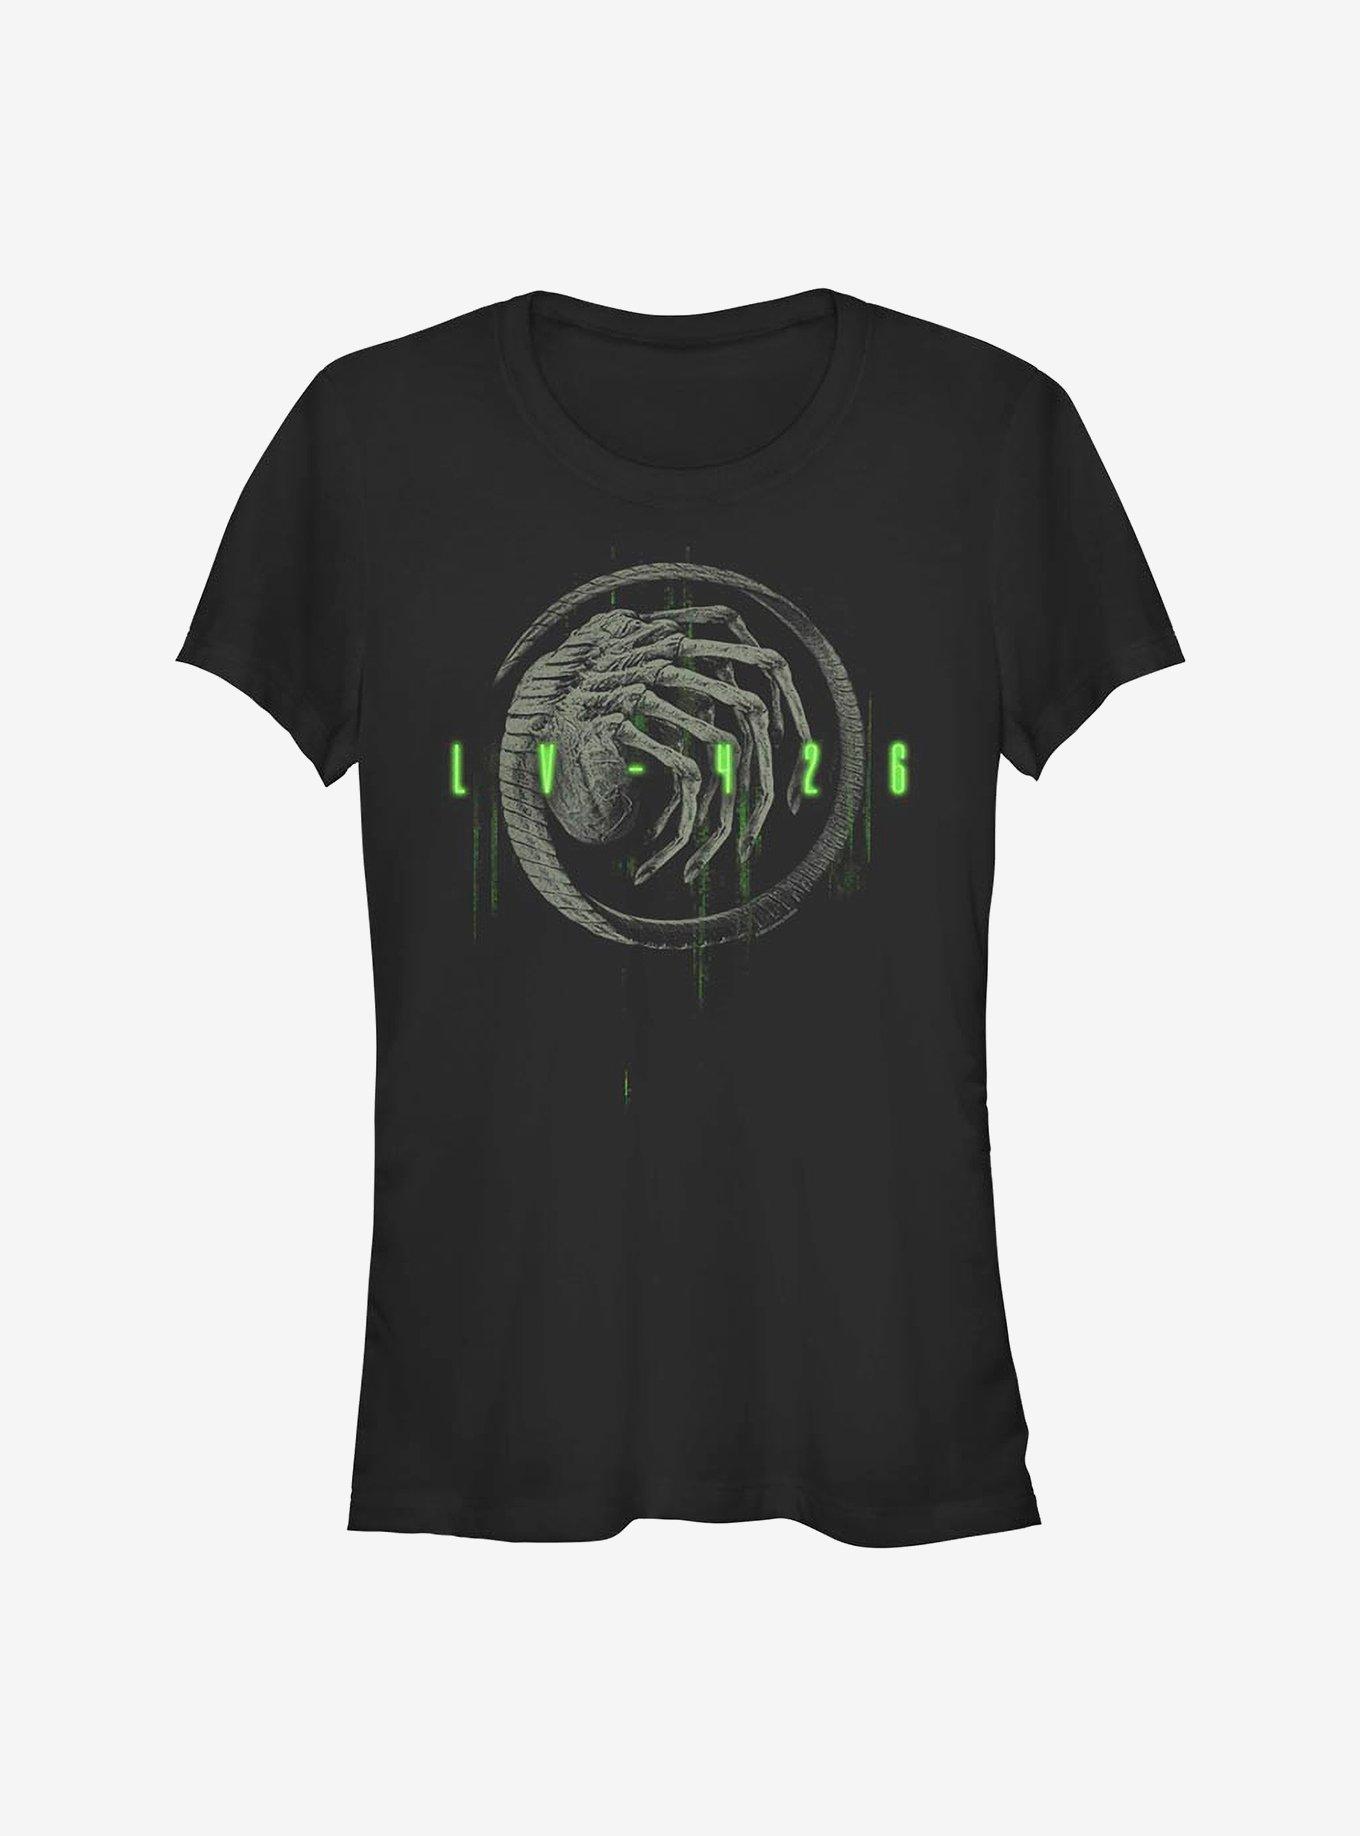 Alien LV-426 Girls T-Shirt, BLACK, hi-res